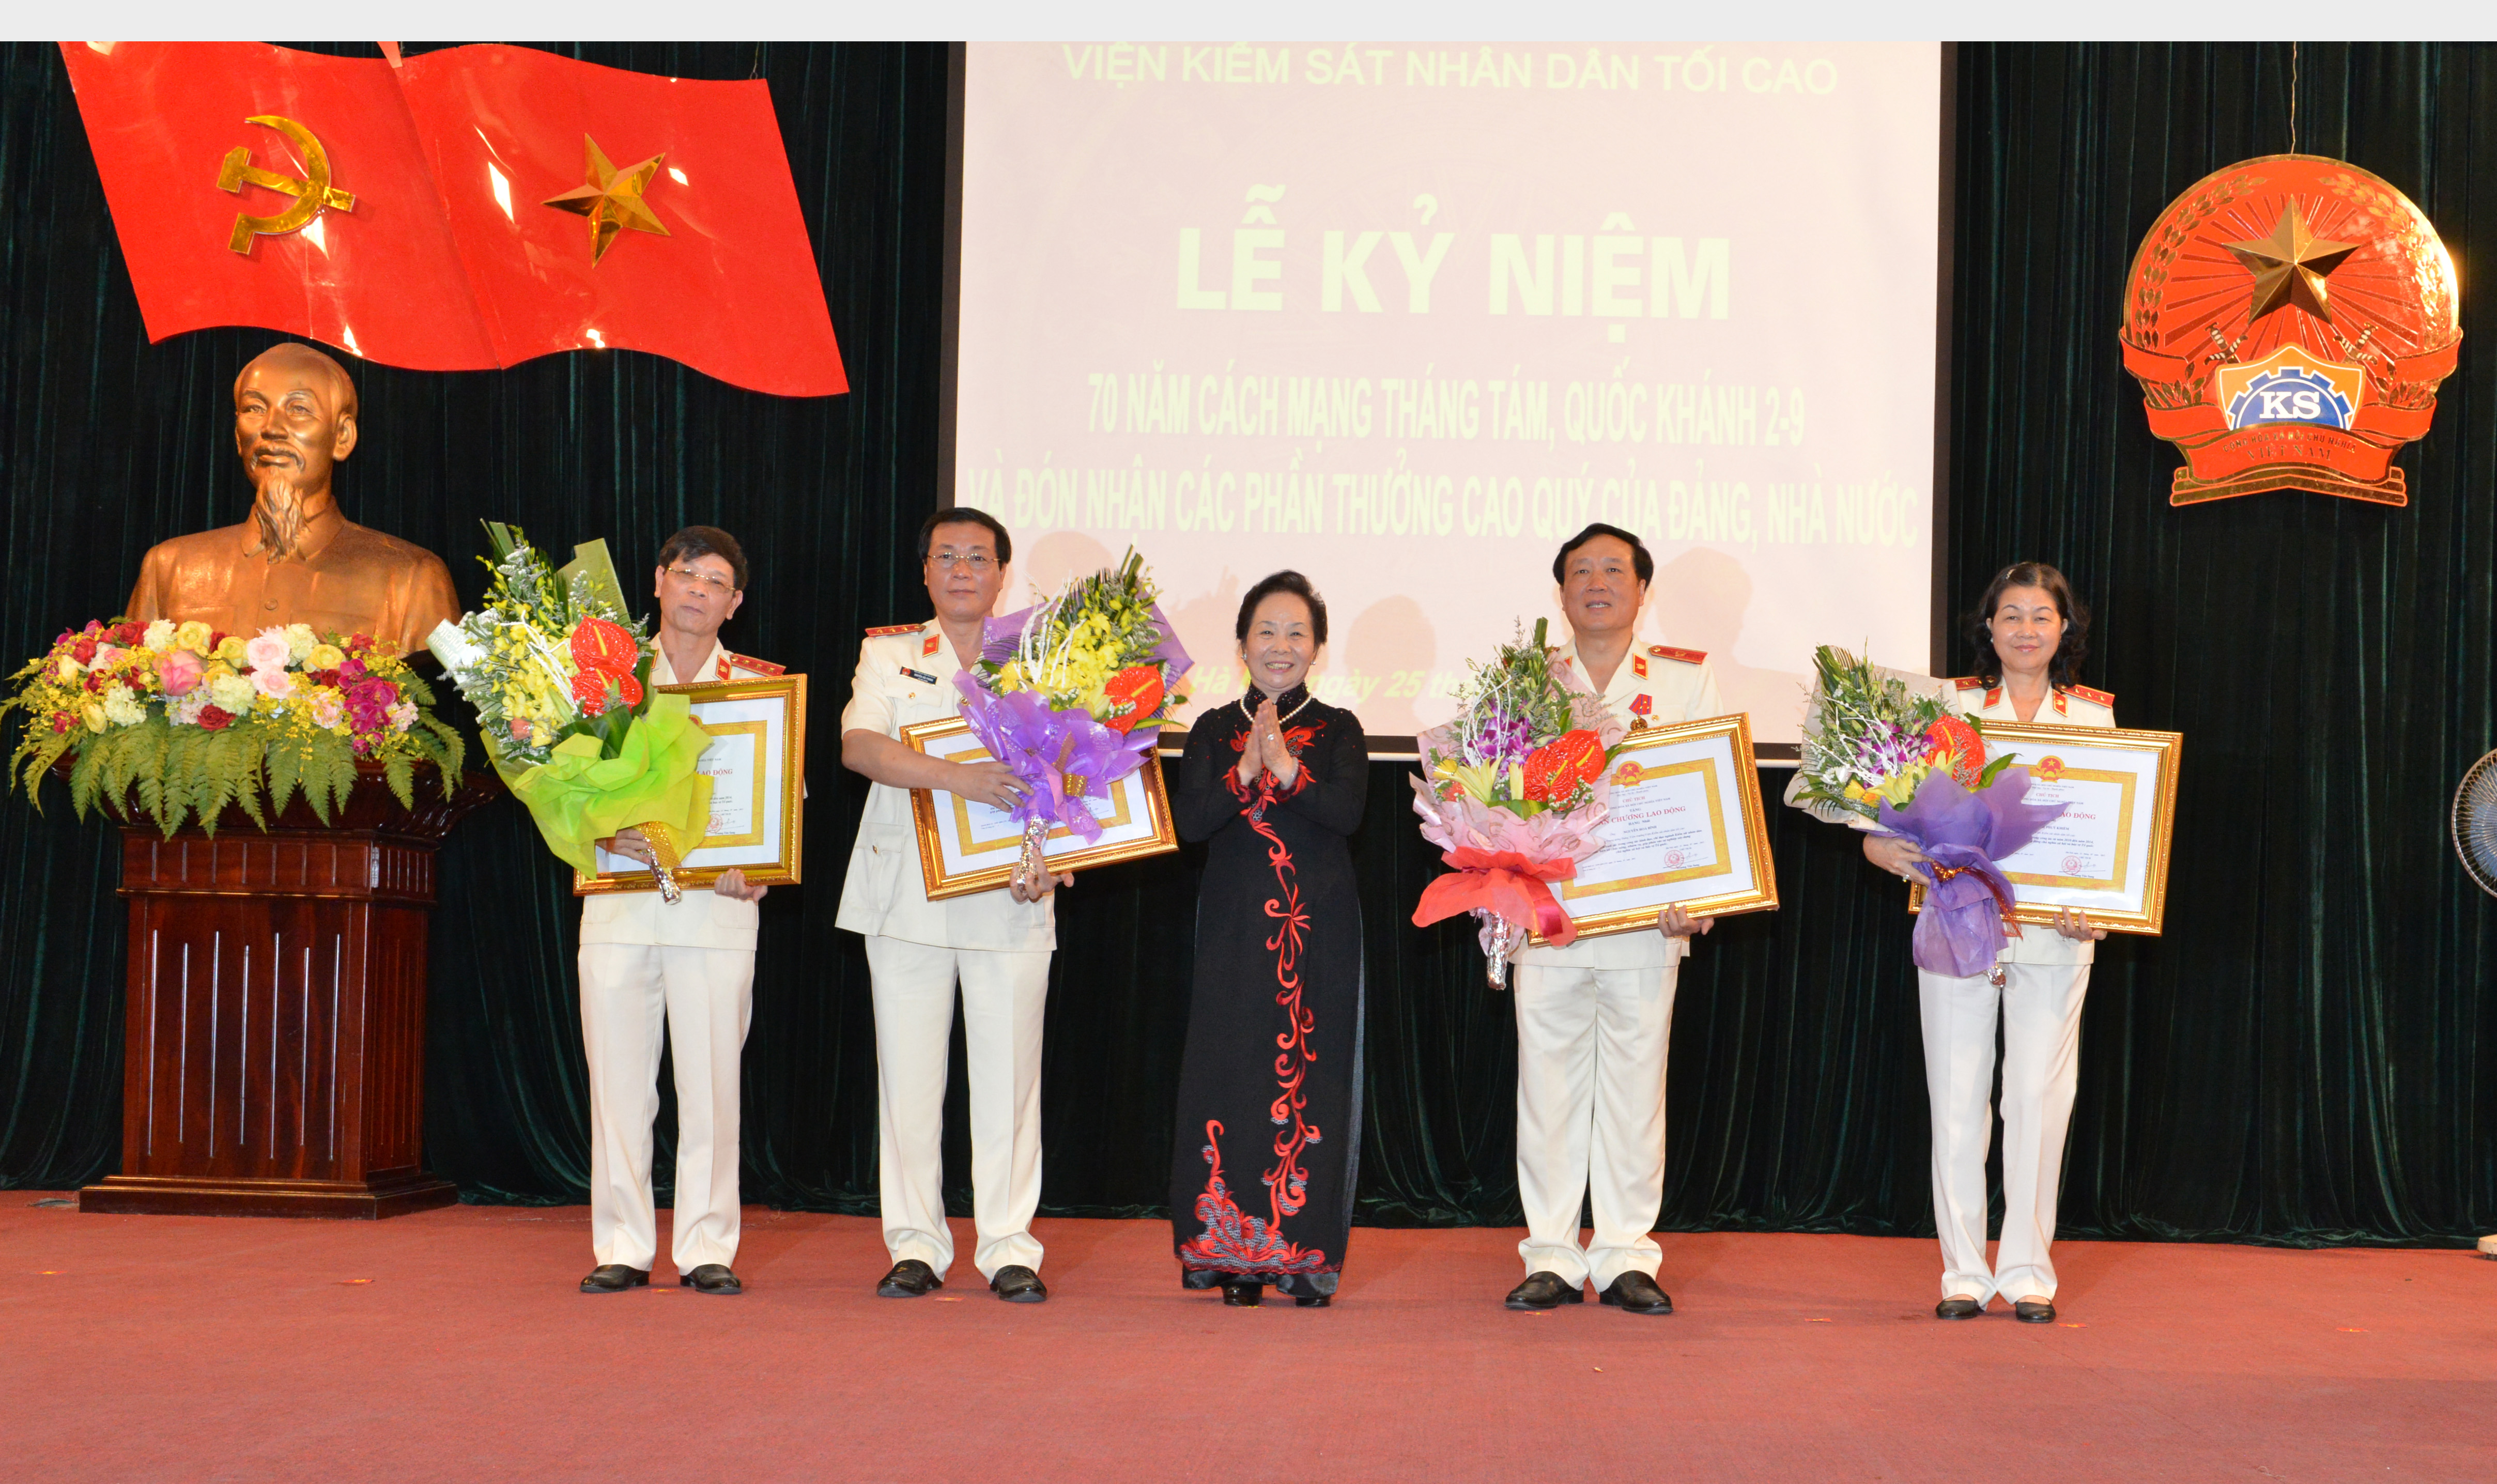 Phó Chủ tịch nước Nguyễn Thị Doan trao tặng Huân chương Lao động cho các cá nhân là lãnh đạo VKSNDTC (ngày 25/8/2015)